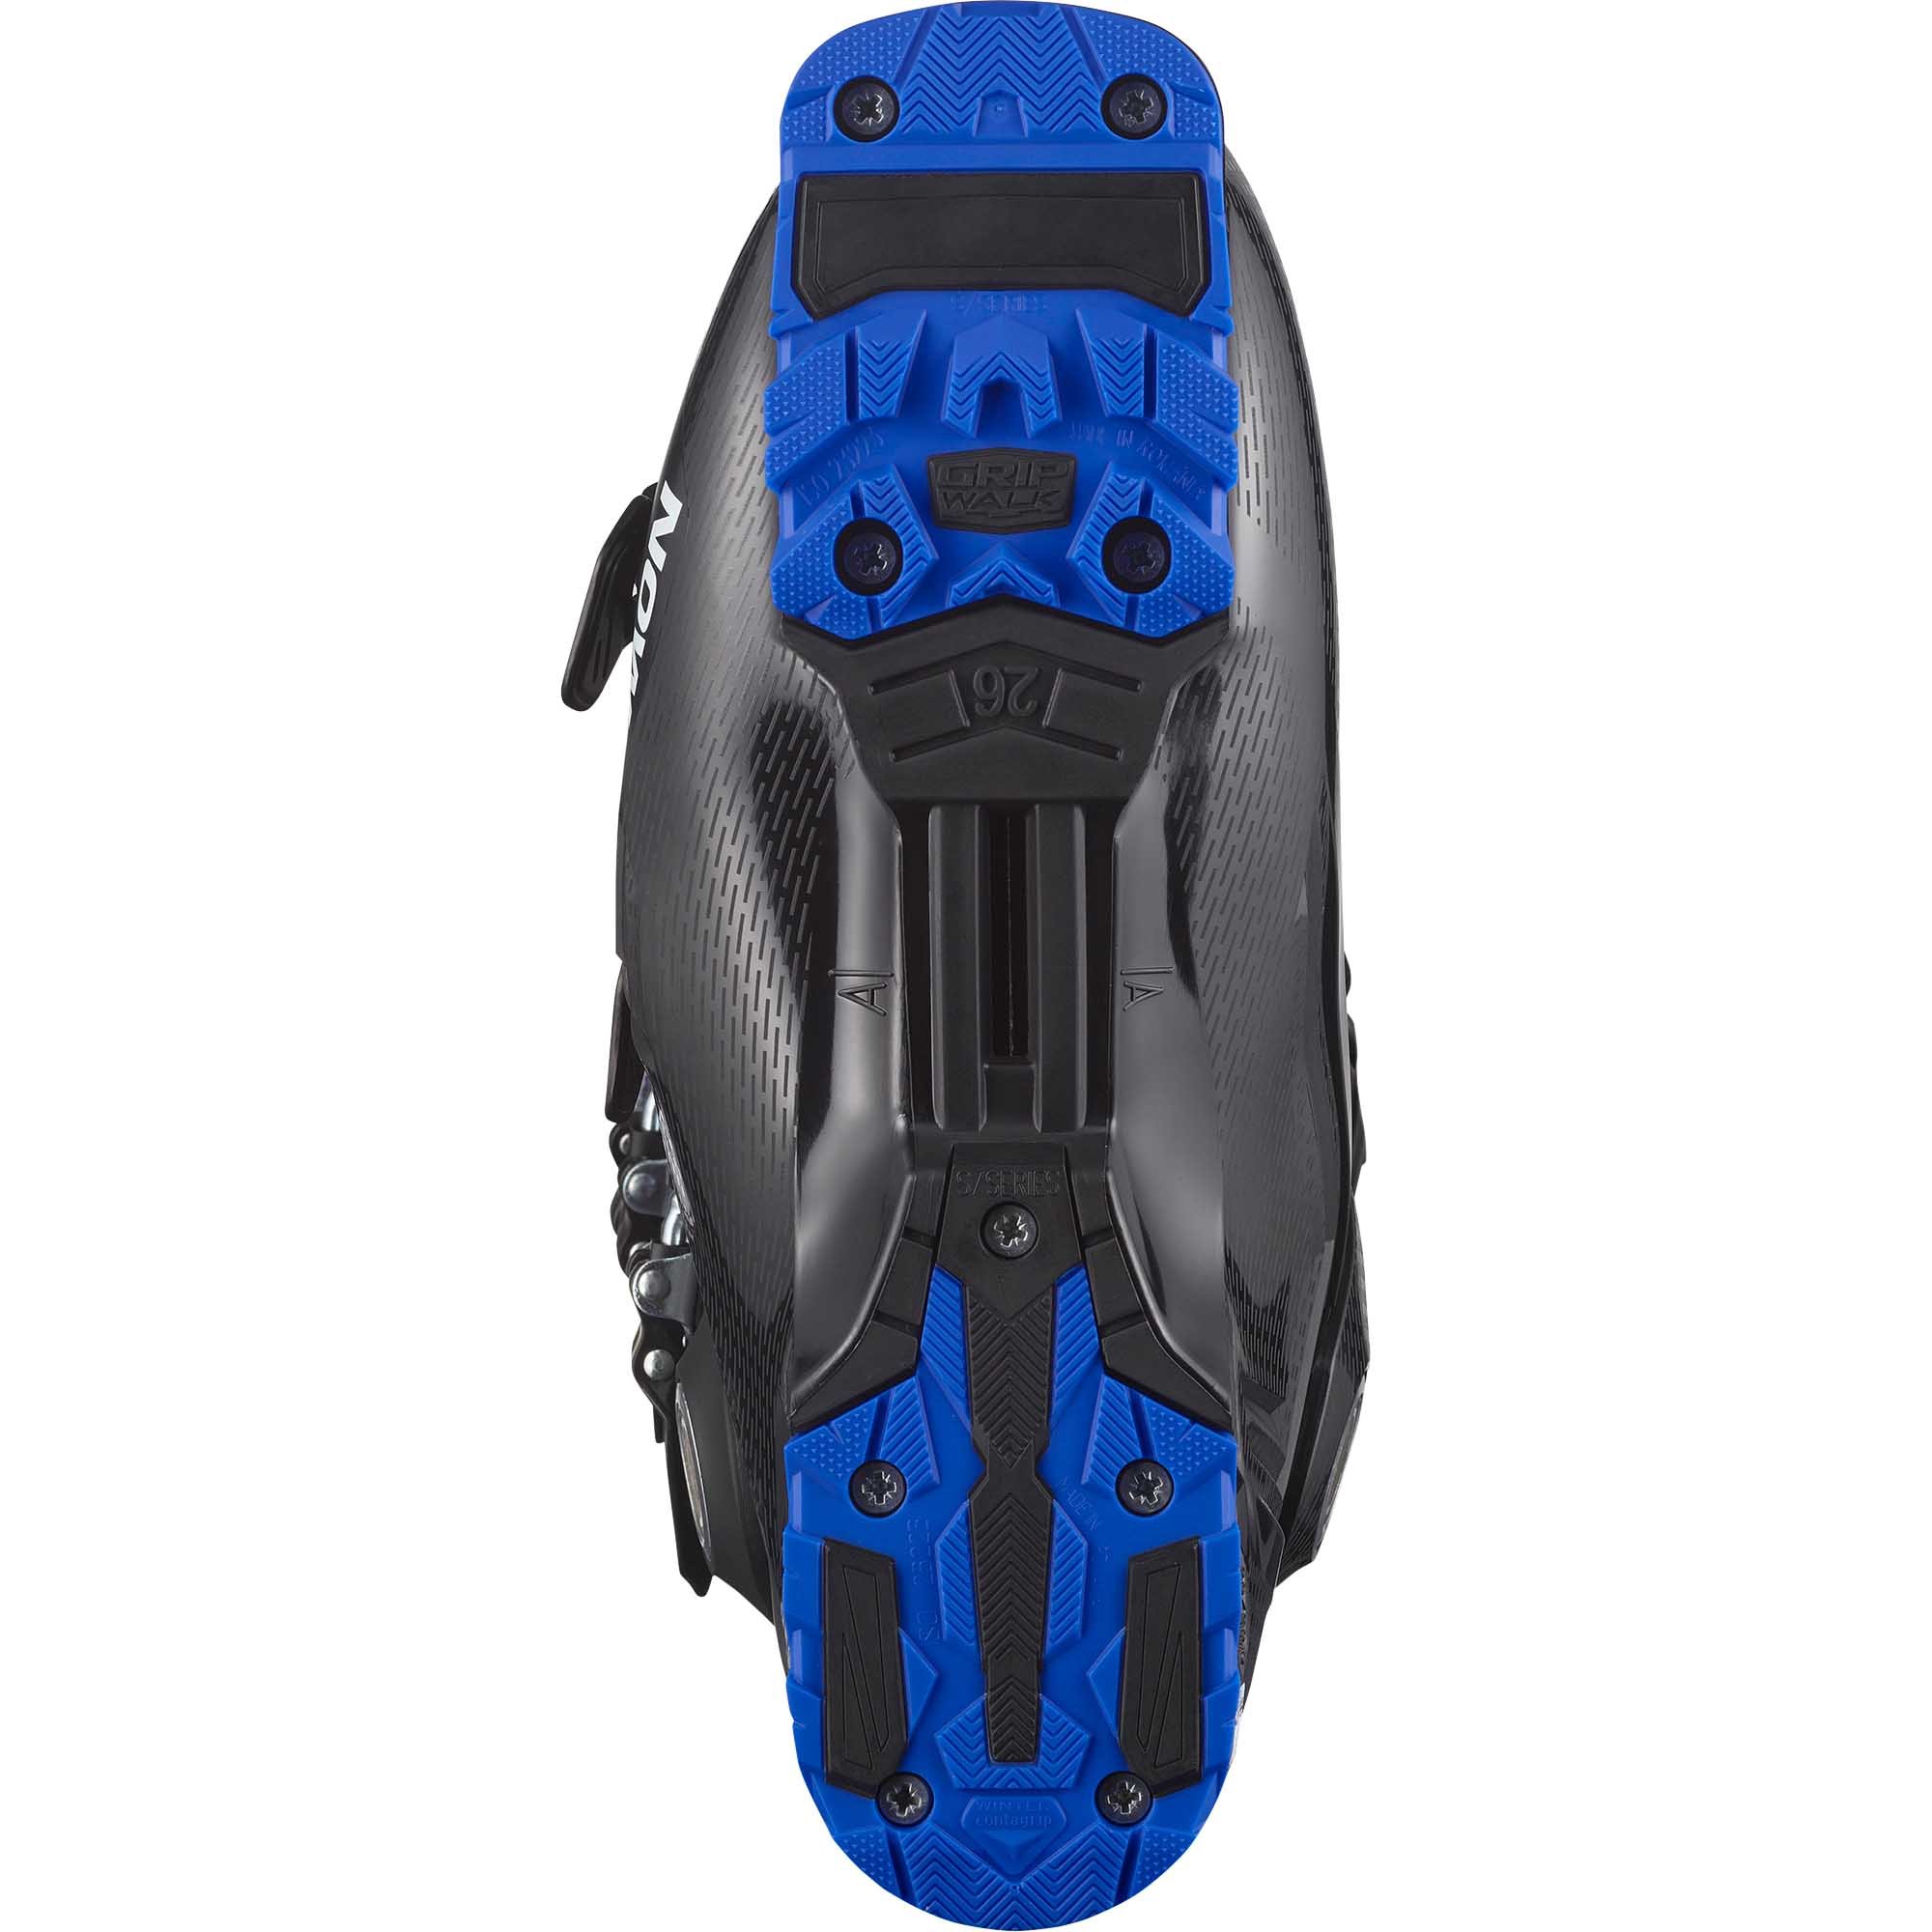 Salomon Select HV 120 GW GripWalk Ski Boots